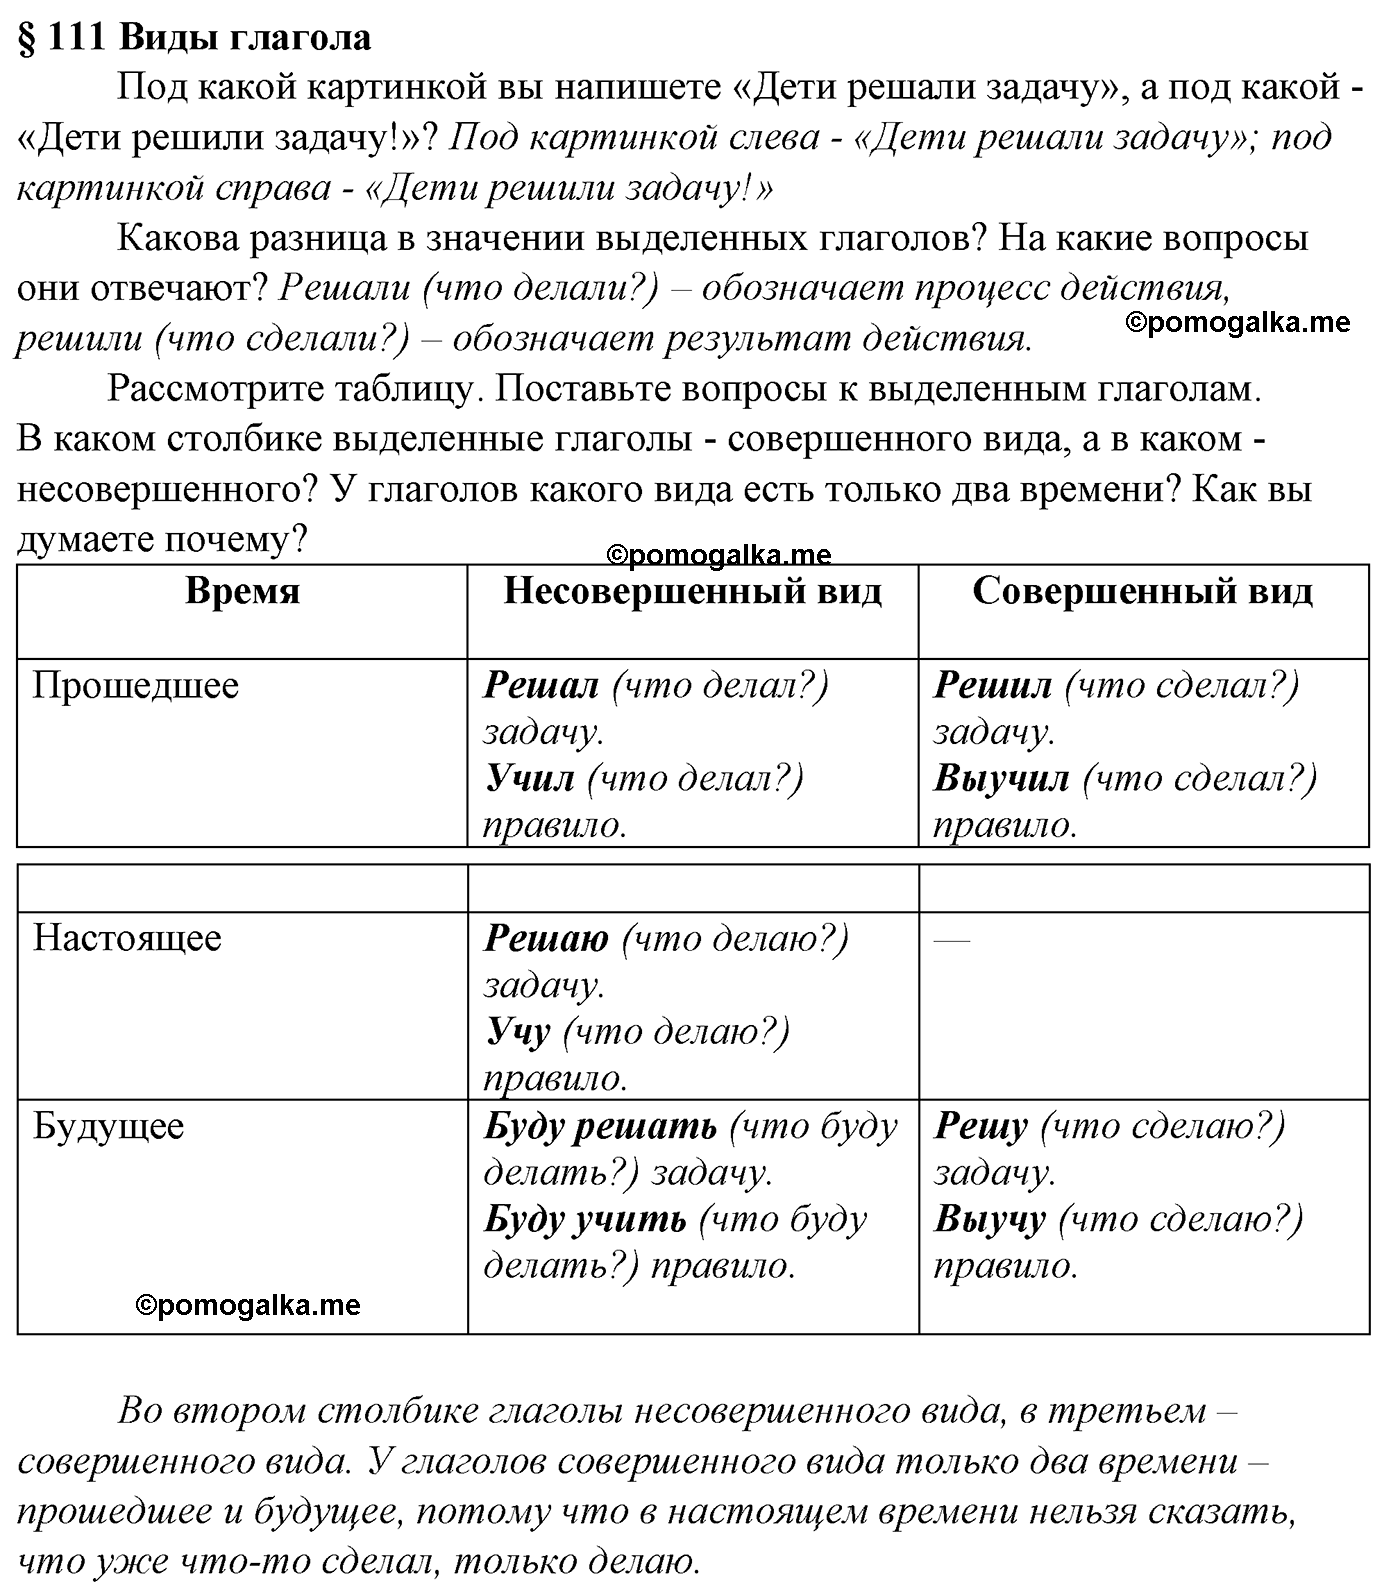 Вопросы к §111 русский язык 5 класс Ладыженская, Баранов, Тростенцова 2012 год